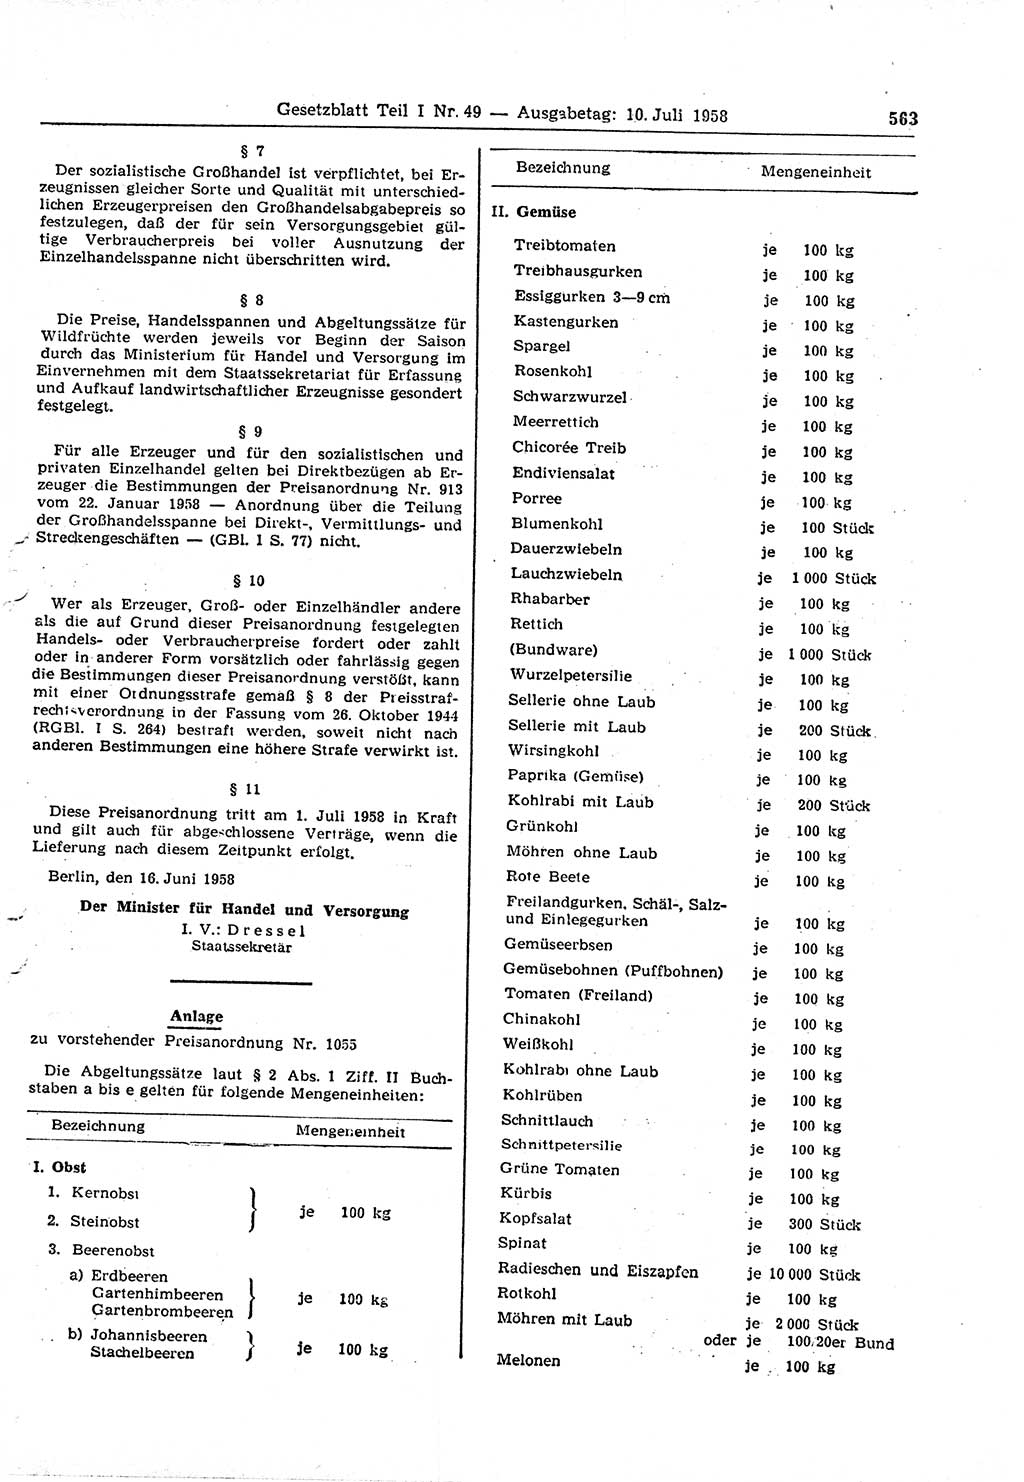 Gesetzblatt (GBl.) der Deutschen Demokratischen Republik (DDR) Teil Ⅰ 1958, Seite 563 (GBl. DDR Ⅰ 1958, S. 563)